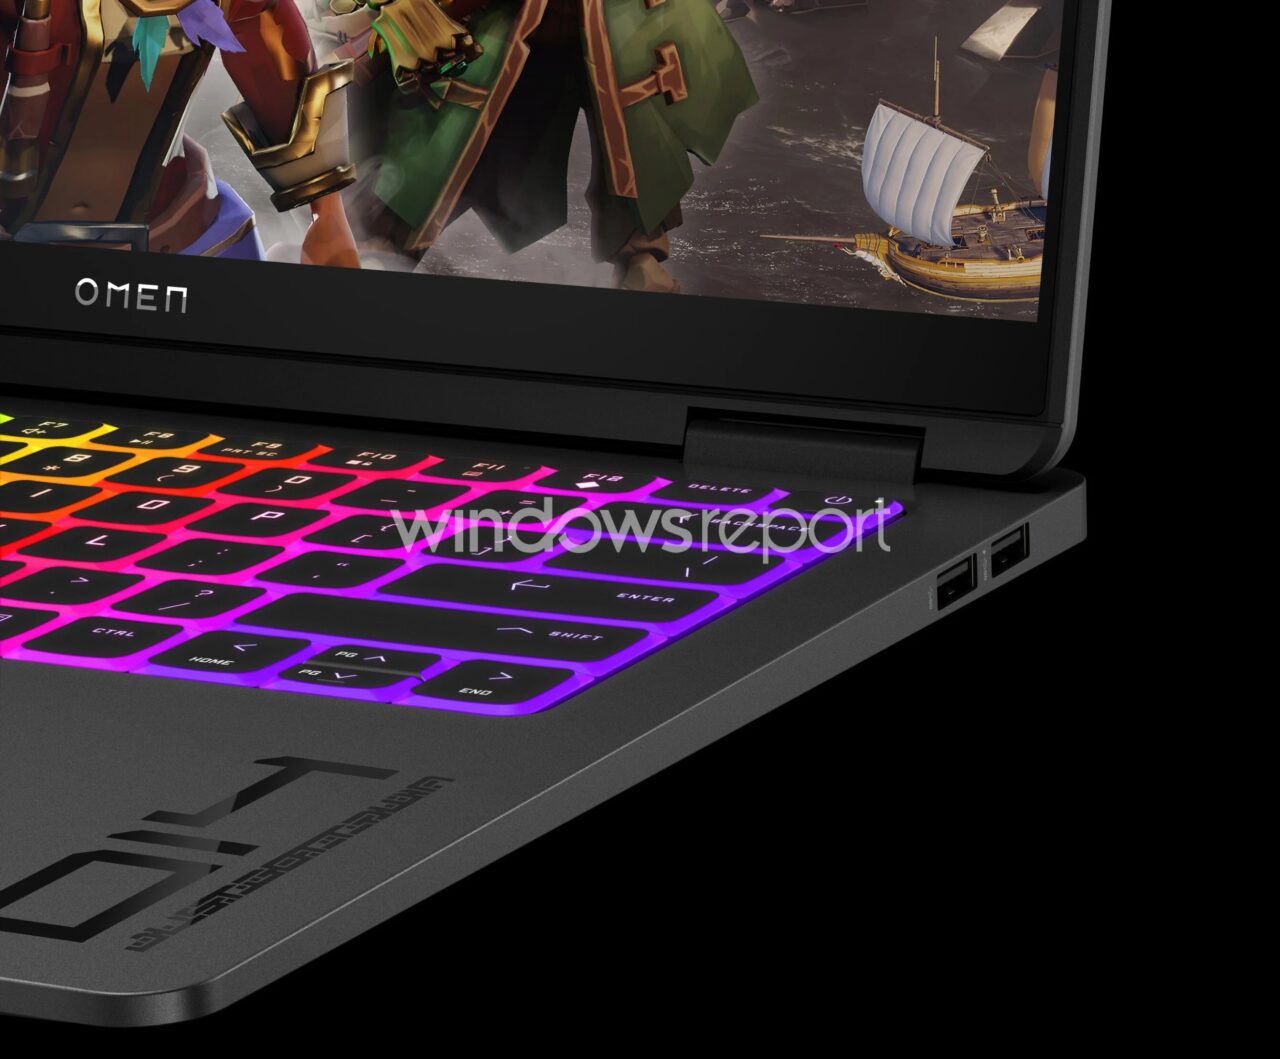 Częściowy widok klawiatury laptopa gamingowego z podświetleniem RGB i wyświetlaczem, na którym znajduje się grafika z gry oraz logo OMEN.